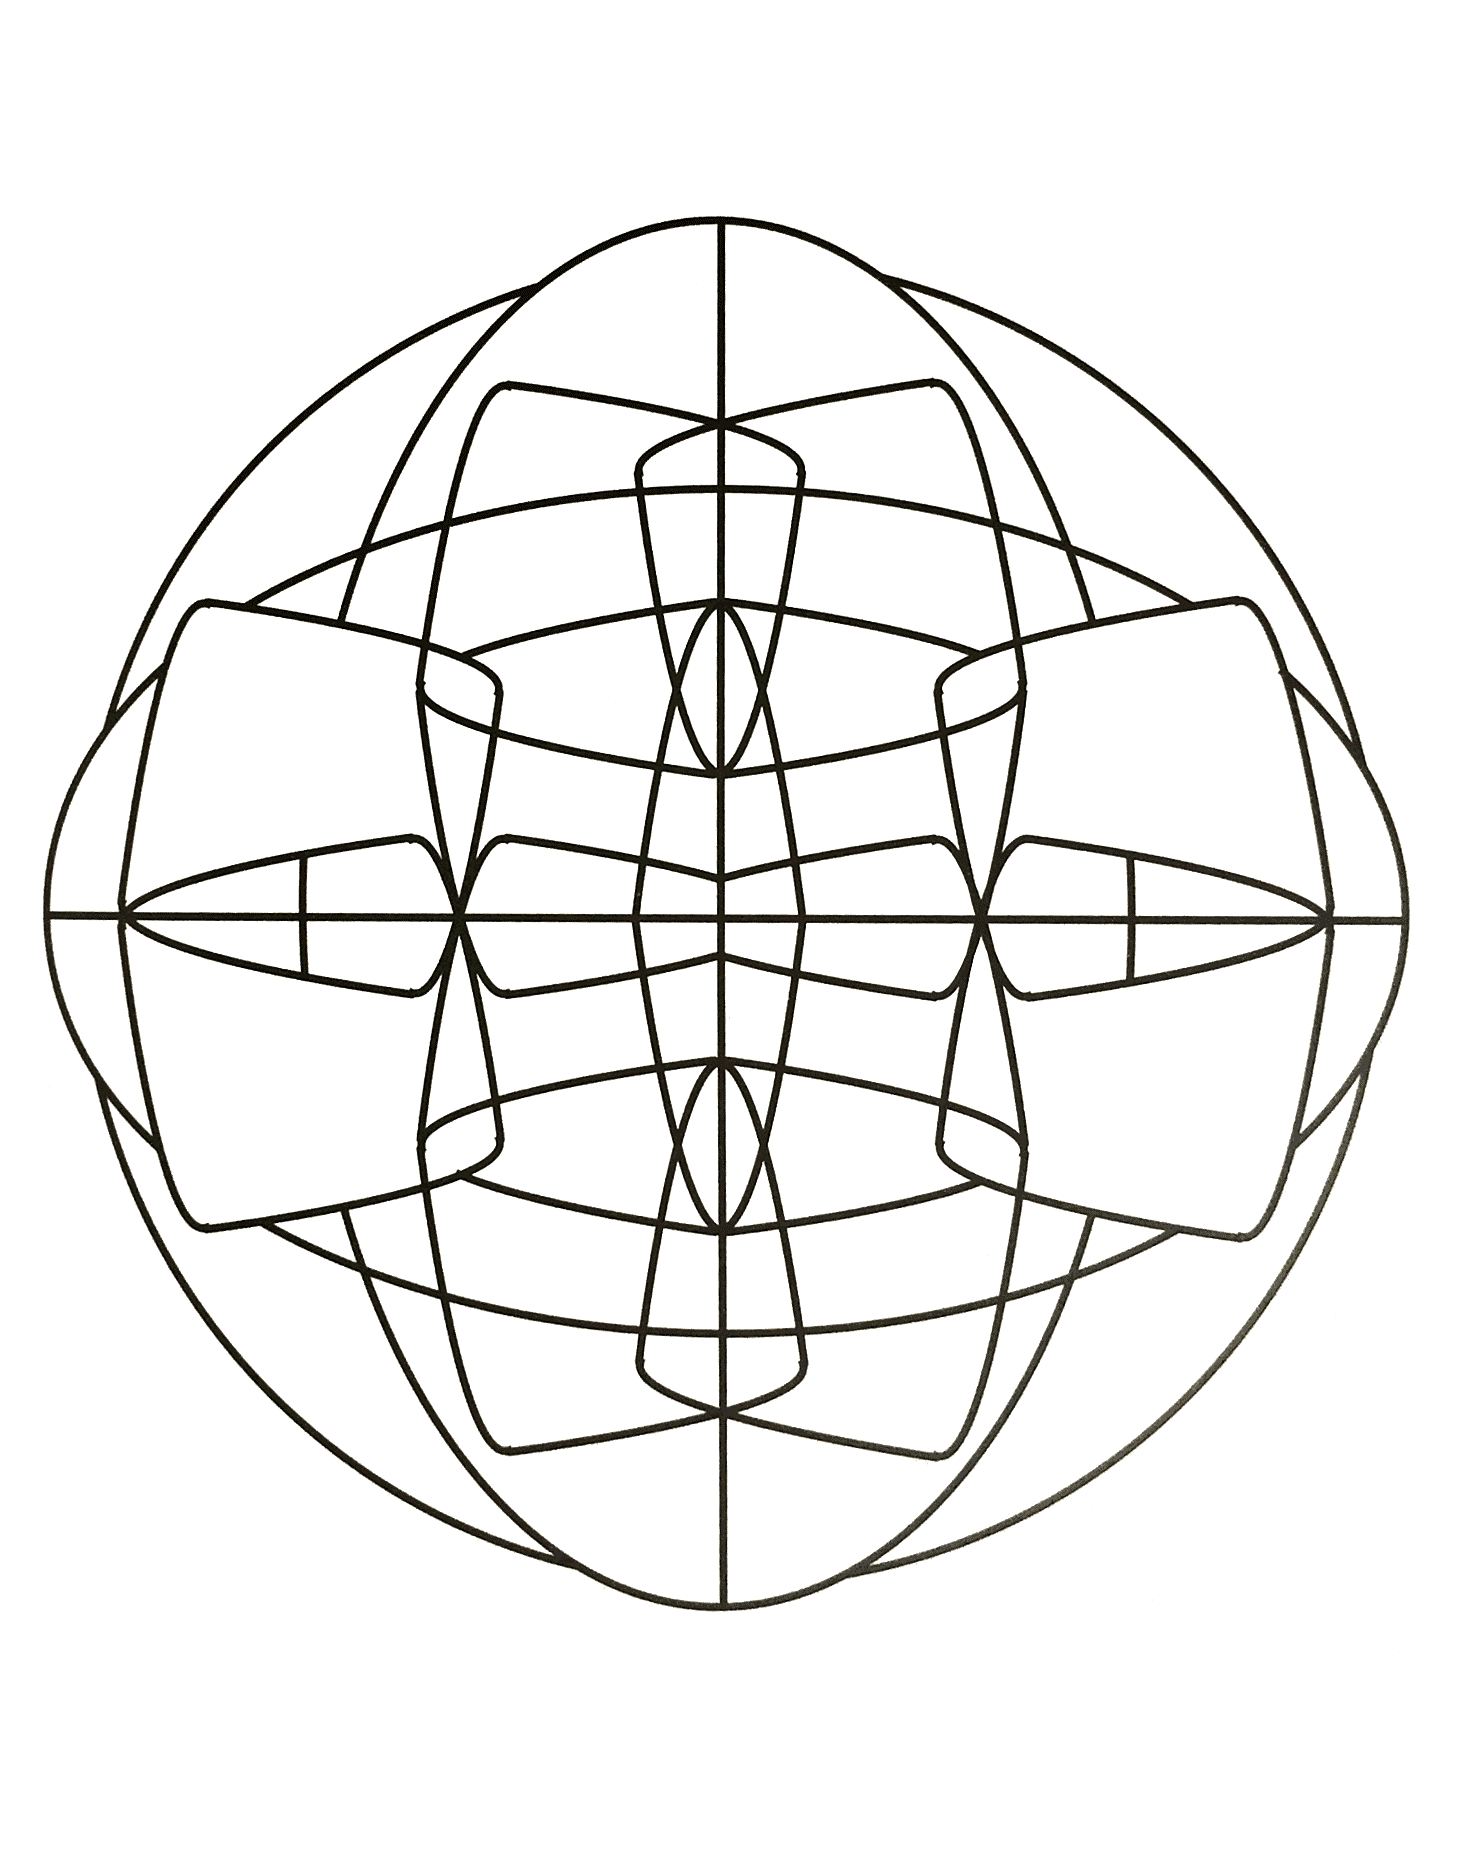 Magnifique mandala symétrique et assez abstrait avec une impression de graphisme tout au long de celui-ci. Assez simple.